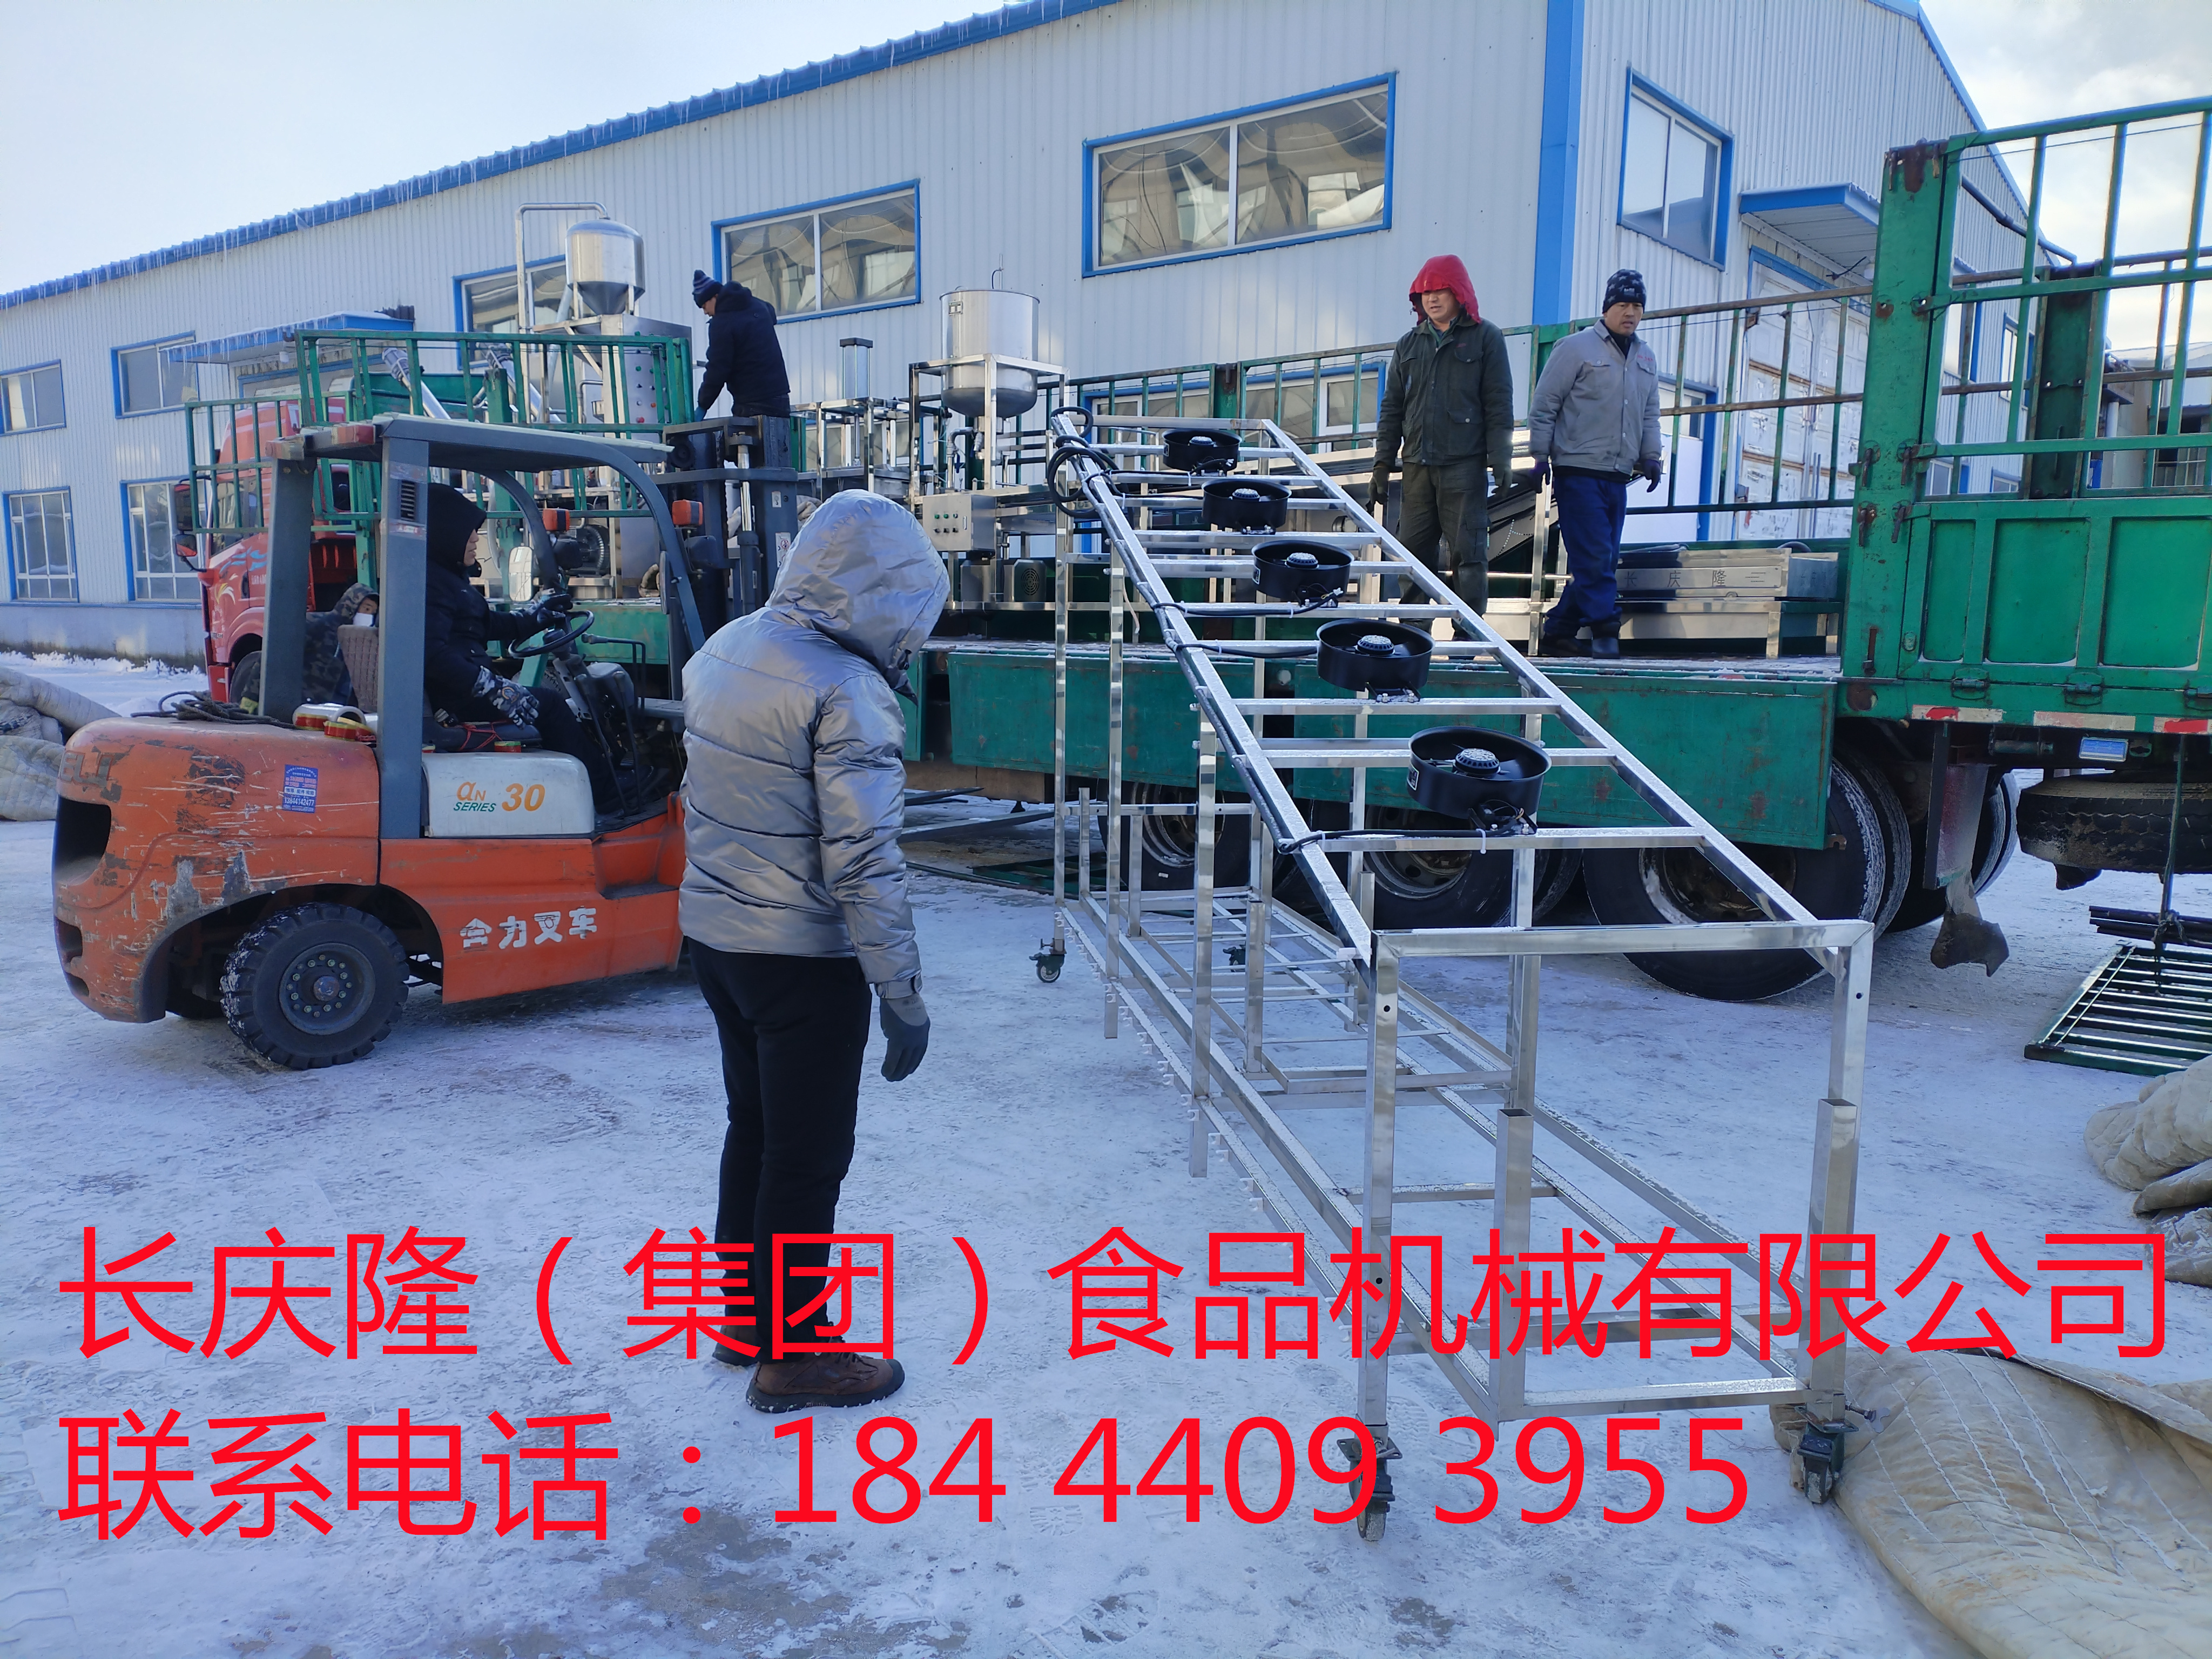 河北滦县客户订购的大型干豆腐机生产线马上装车 (6)_副本.jpg